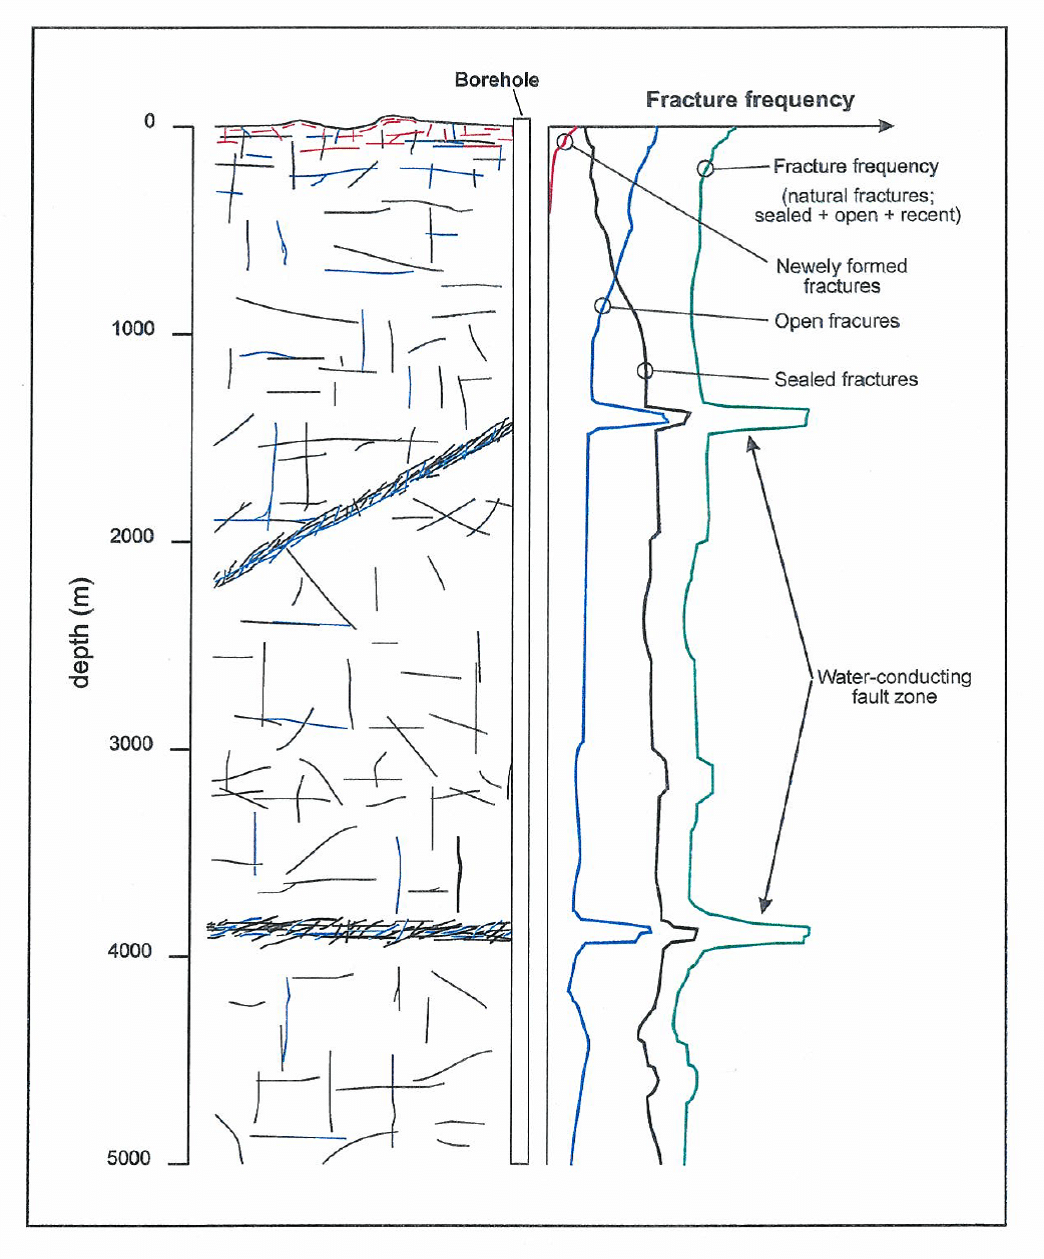 Figur 123-5: Konzeptuelles Modell zur Klufthäufigkeit und Wasserführung im kristallinen Untergrund Schwedens in Abhängigkeit von der Tiefe . Quelle: SKB (1998).